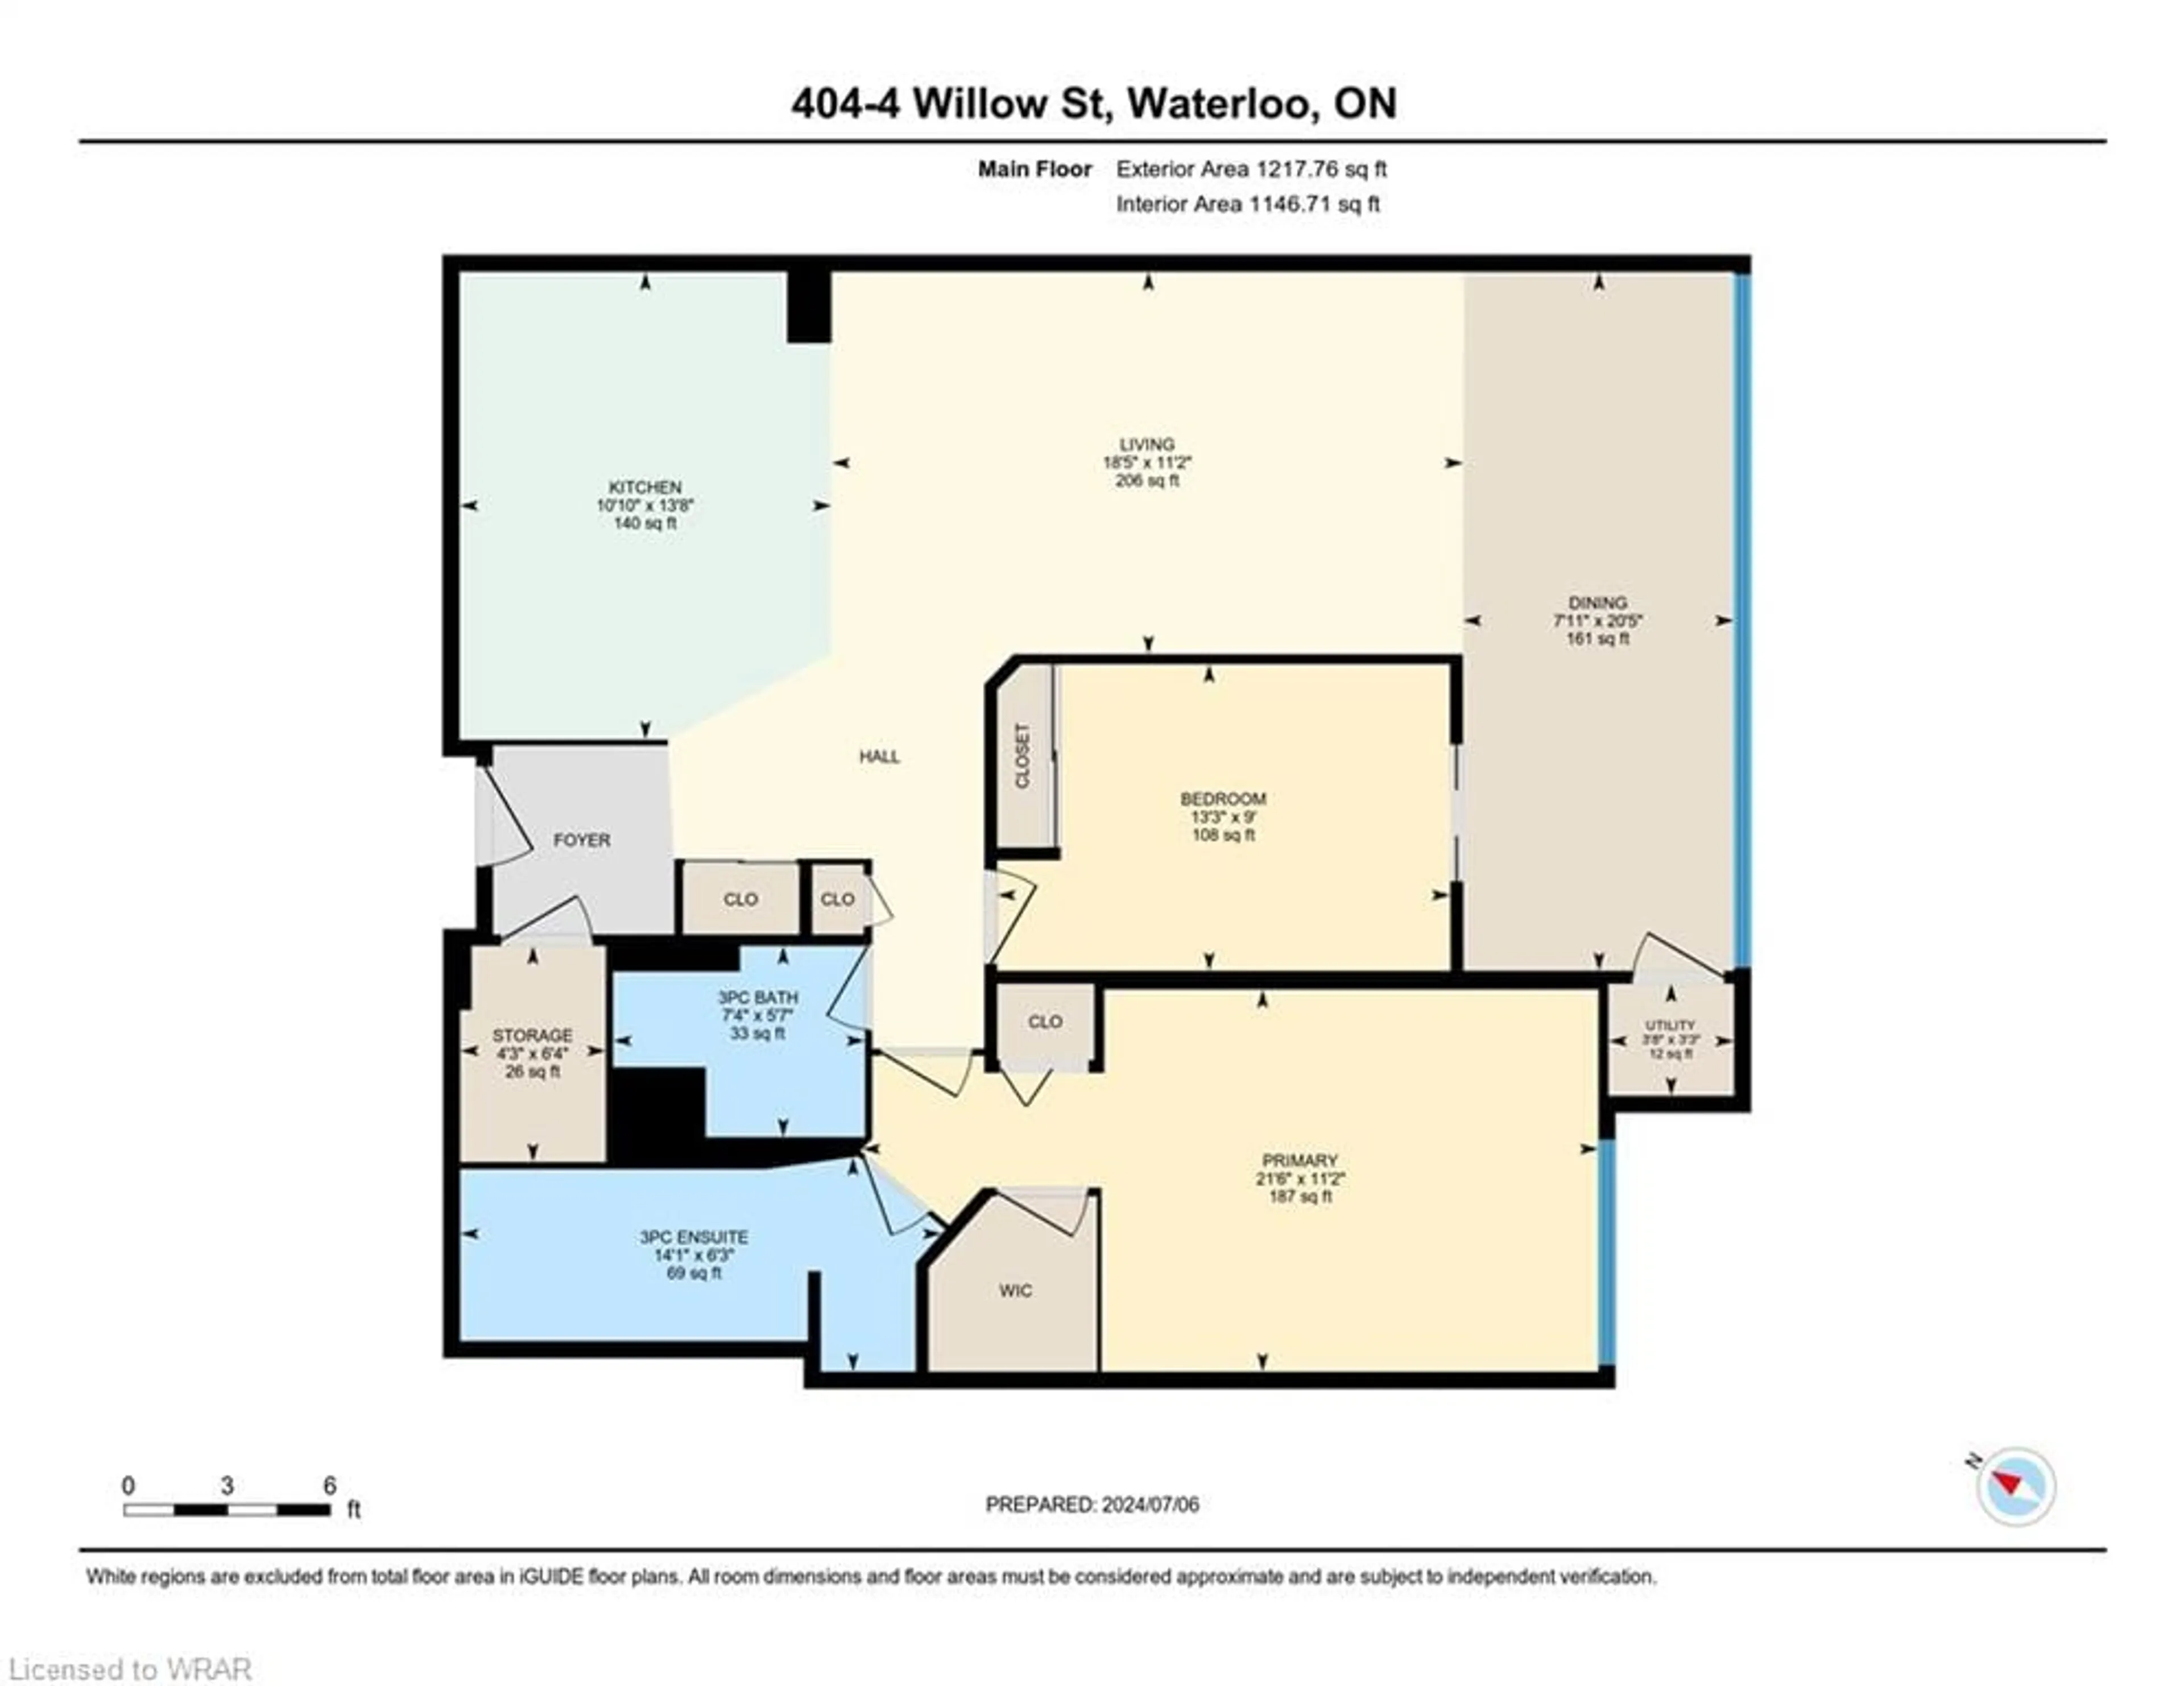 Floor plan for 4 Willow St #404, Waterloo Ontario N2J 4S2